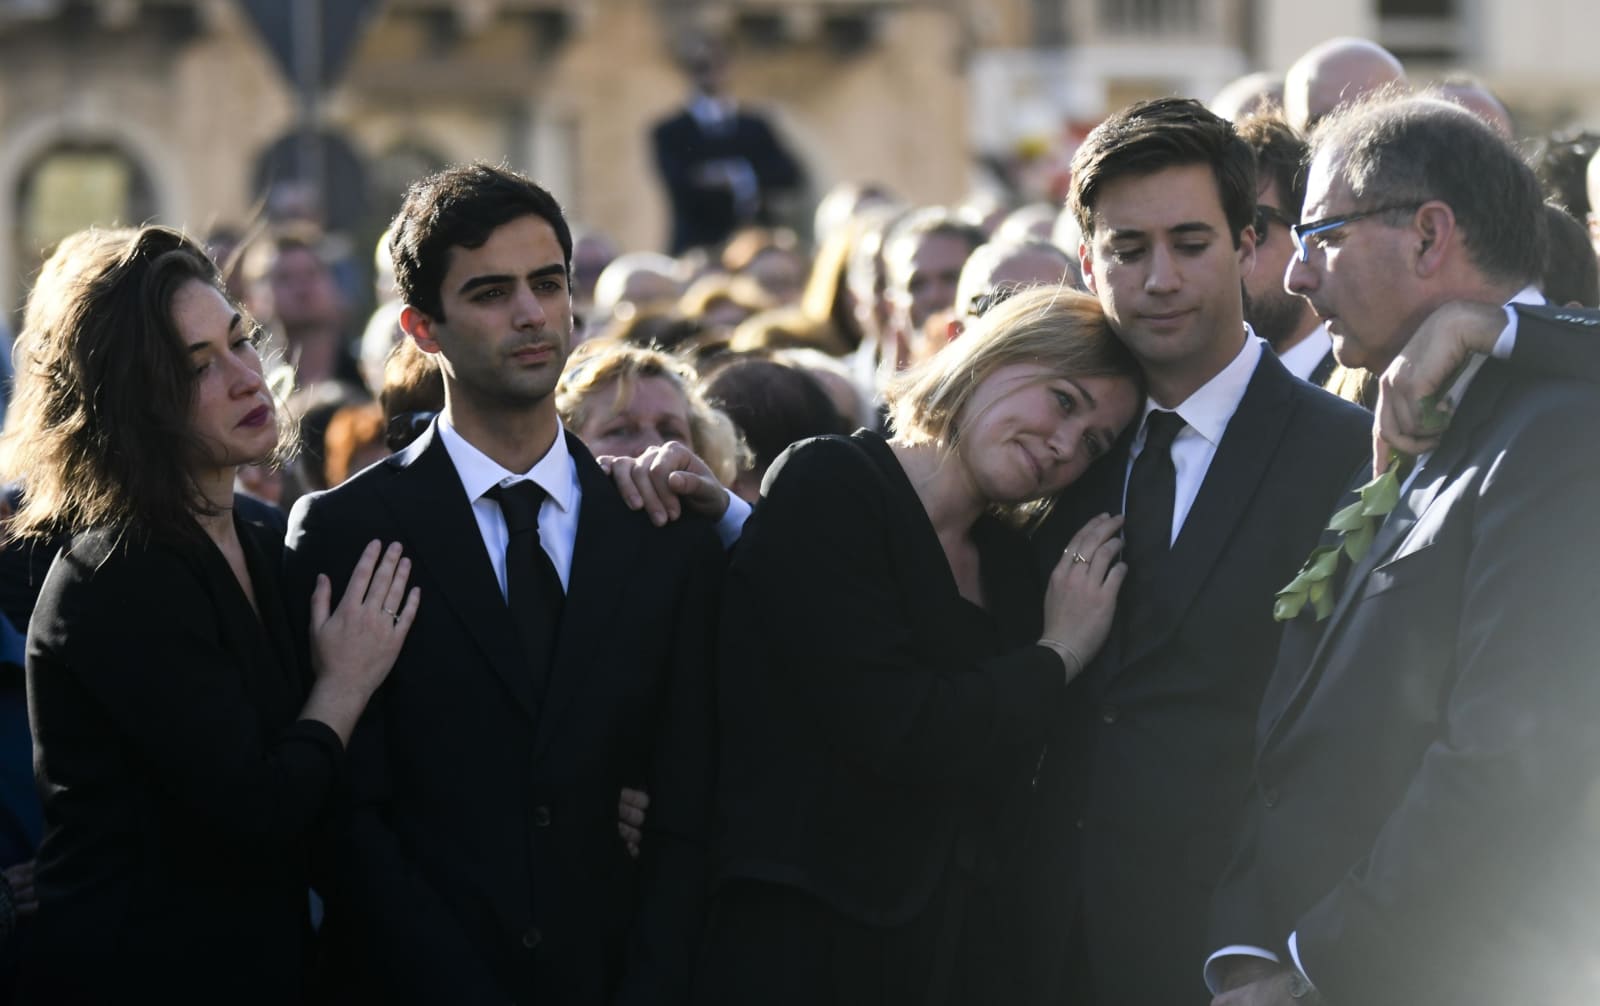 マルタの調査報道記者葬儀 不正疑惑追及し殺害